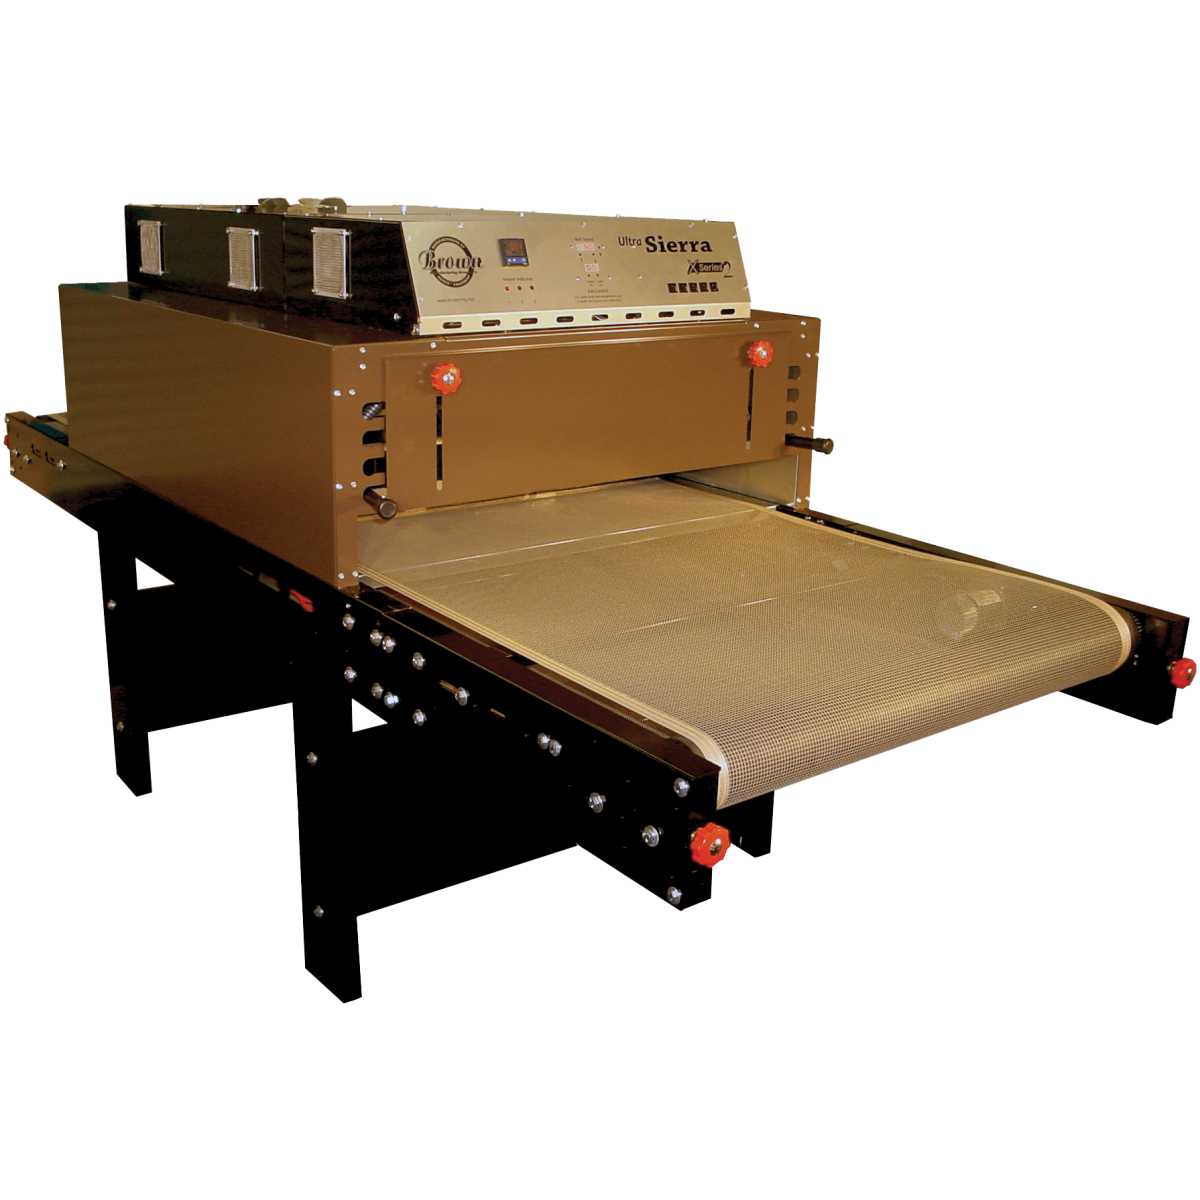 Ultrasierra X Series 2 Conveyor Dryer BROWN MFG®